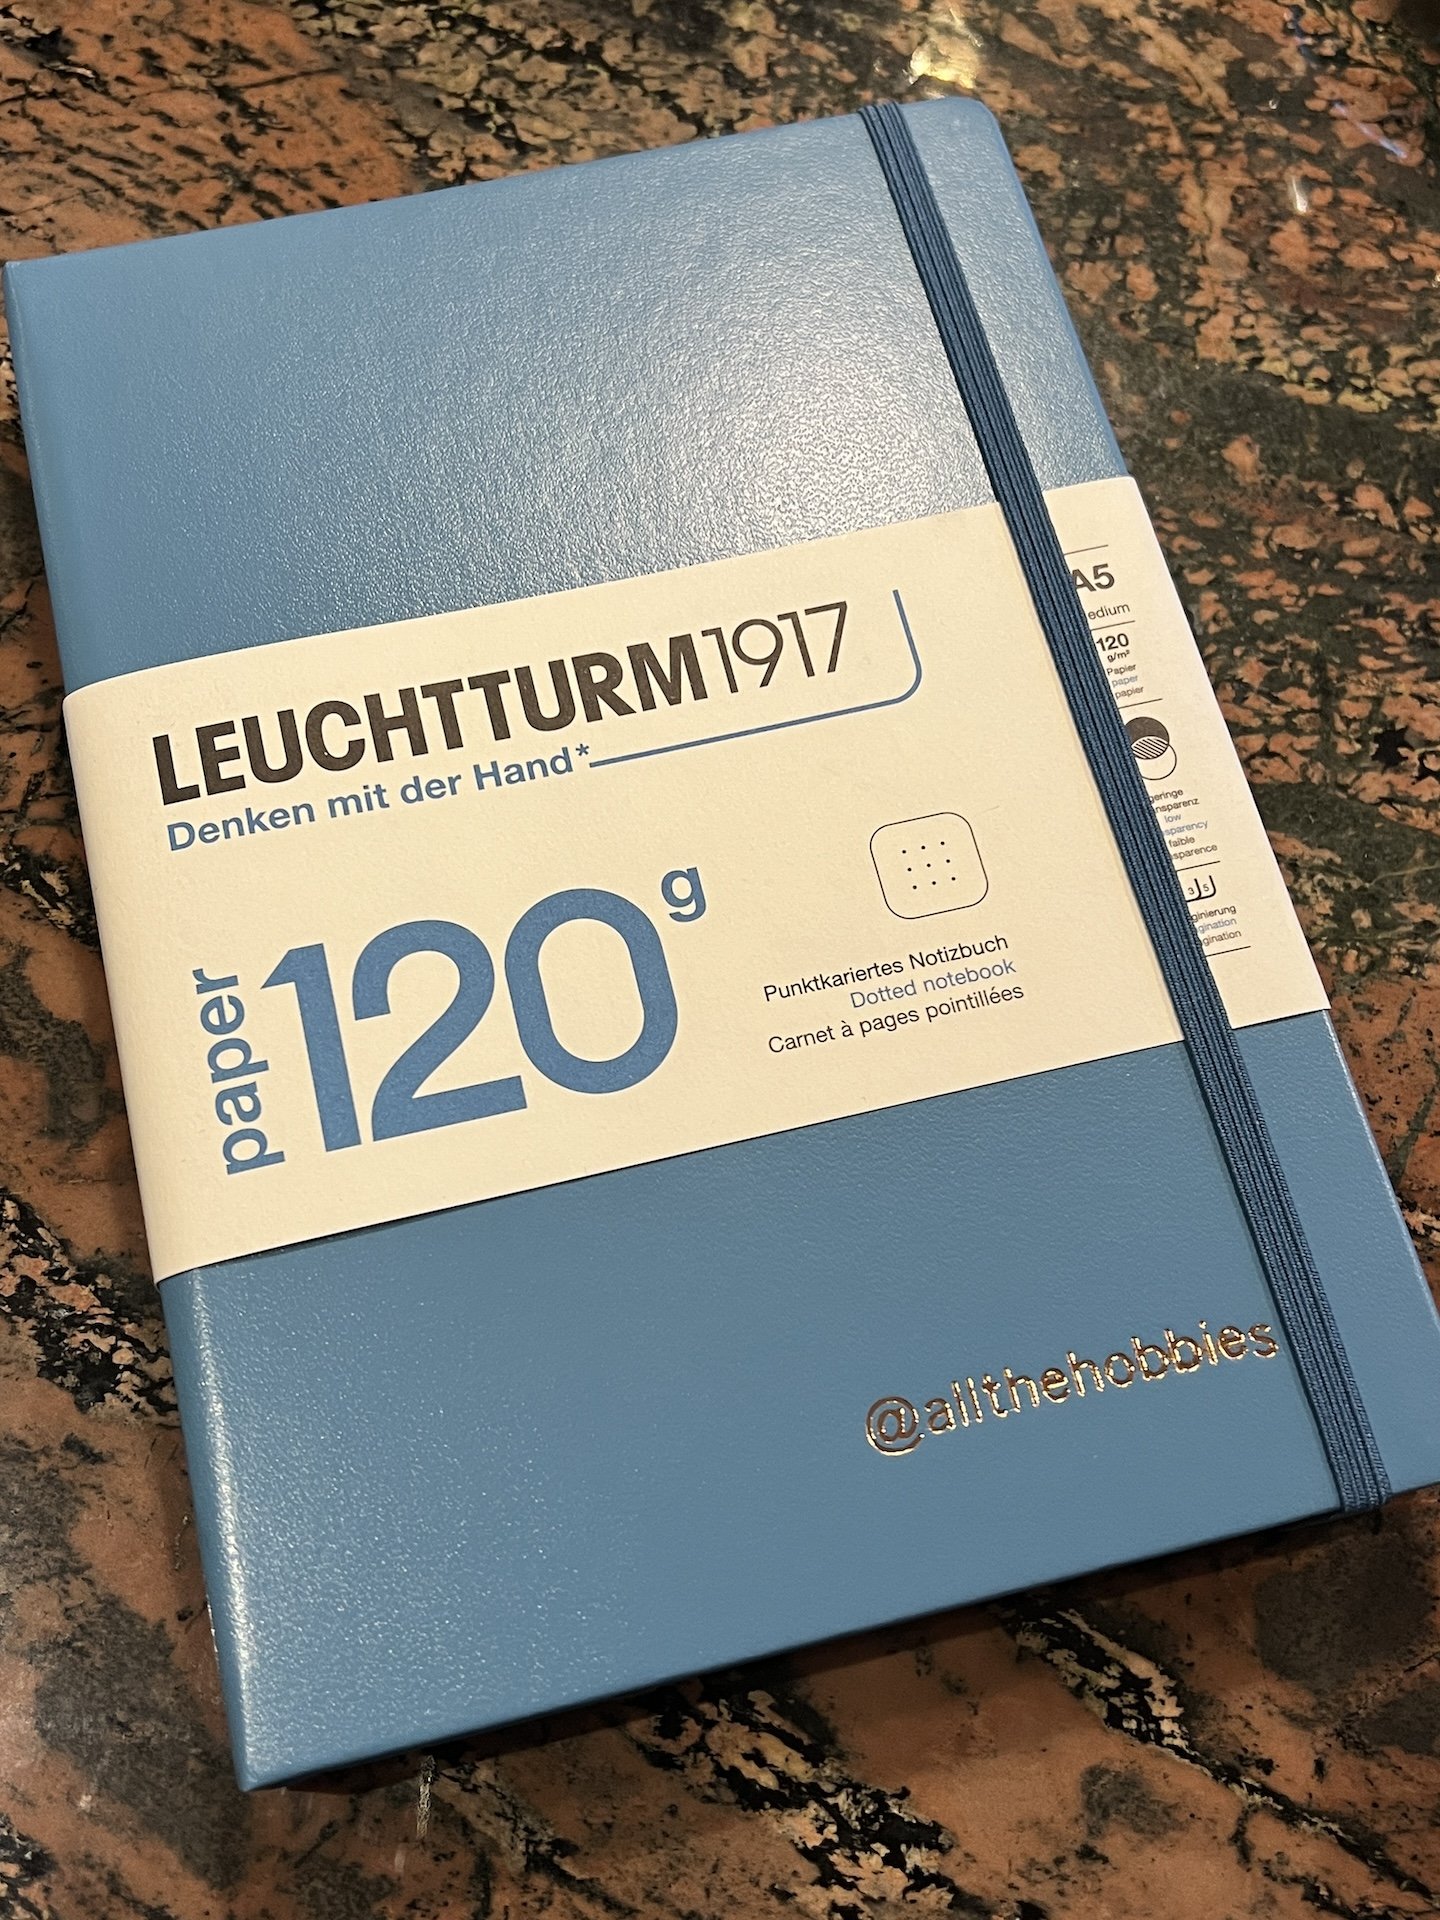 Leuchtturm1917 : A5 Hardcover Notebook : 120gsm : 203 Pages : Dotted : Sage  - LEUCHTTURM1917 - Brands